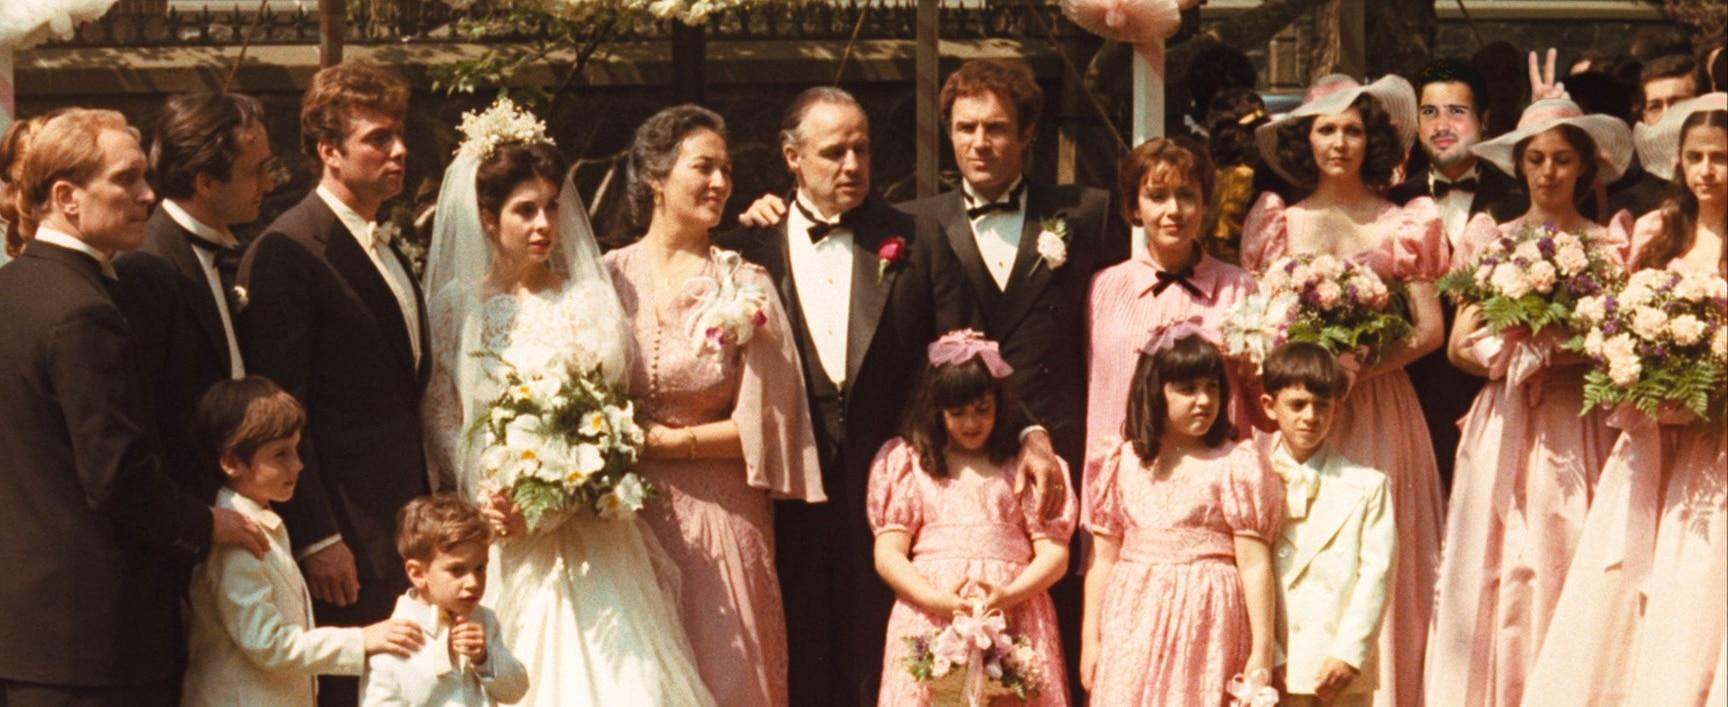 سلسلة The Godfather - حفل الزفاف